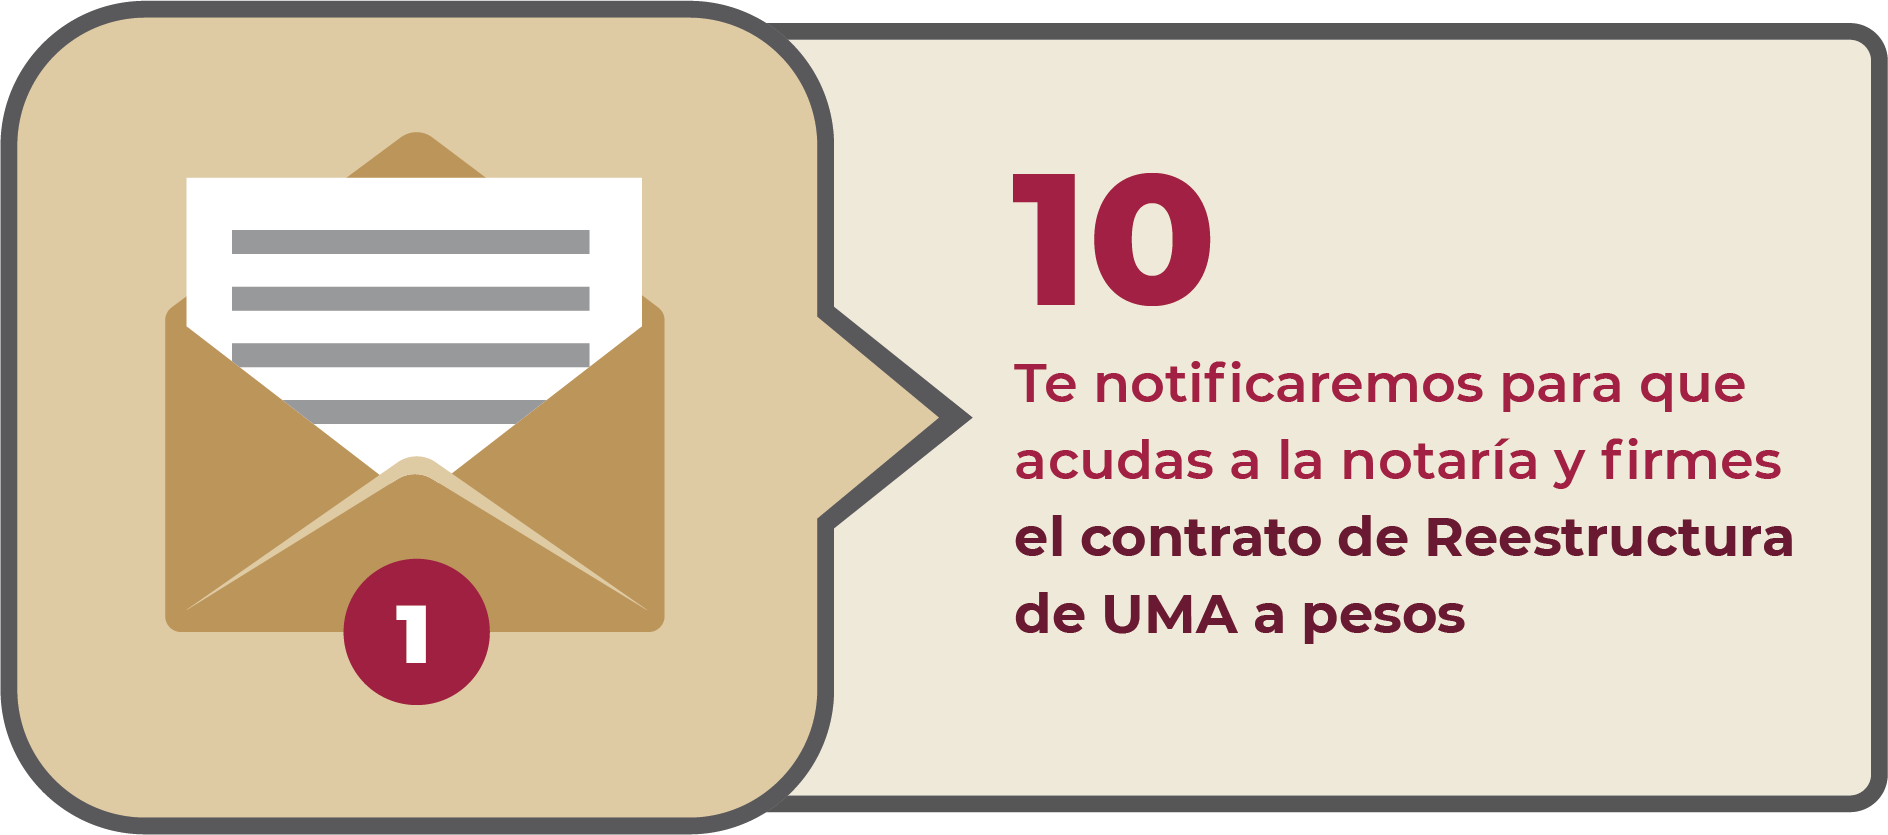 10 Te notificaremos para que acudas a la notaría y firmes el contrato de Reestructura de UMA a pesos